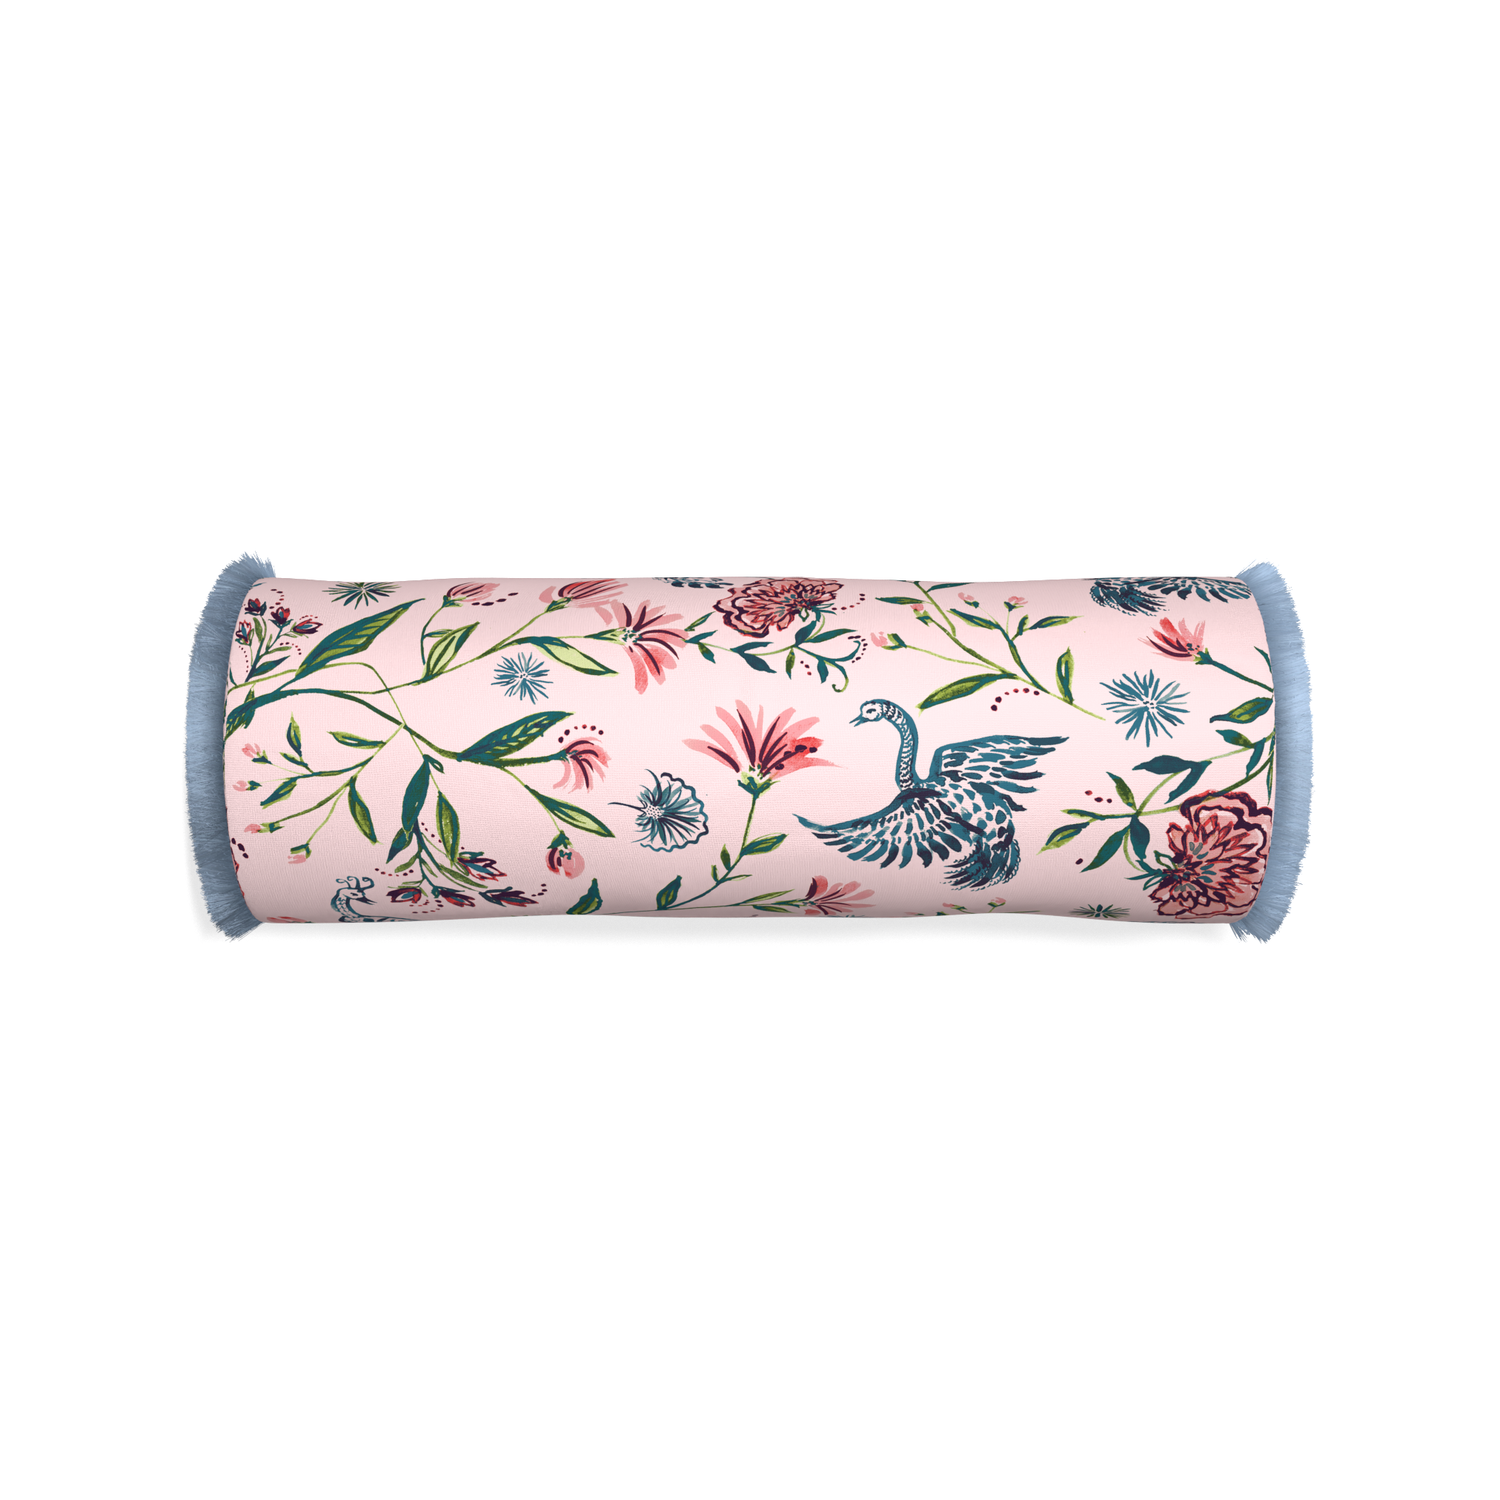 Bolster daphne rose custom pillow with sky fringe on white background